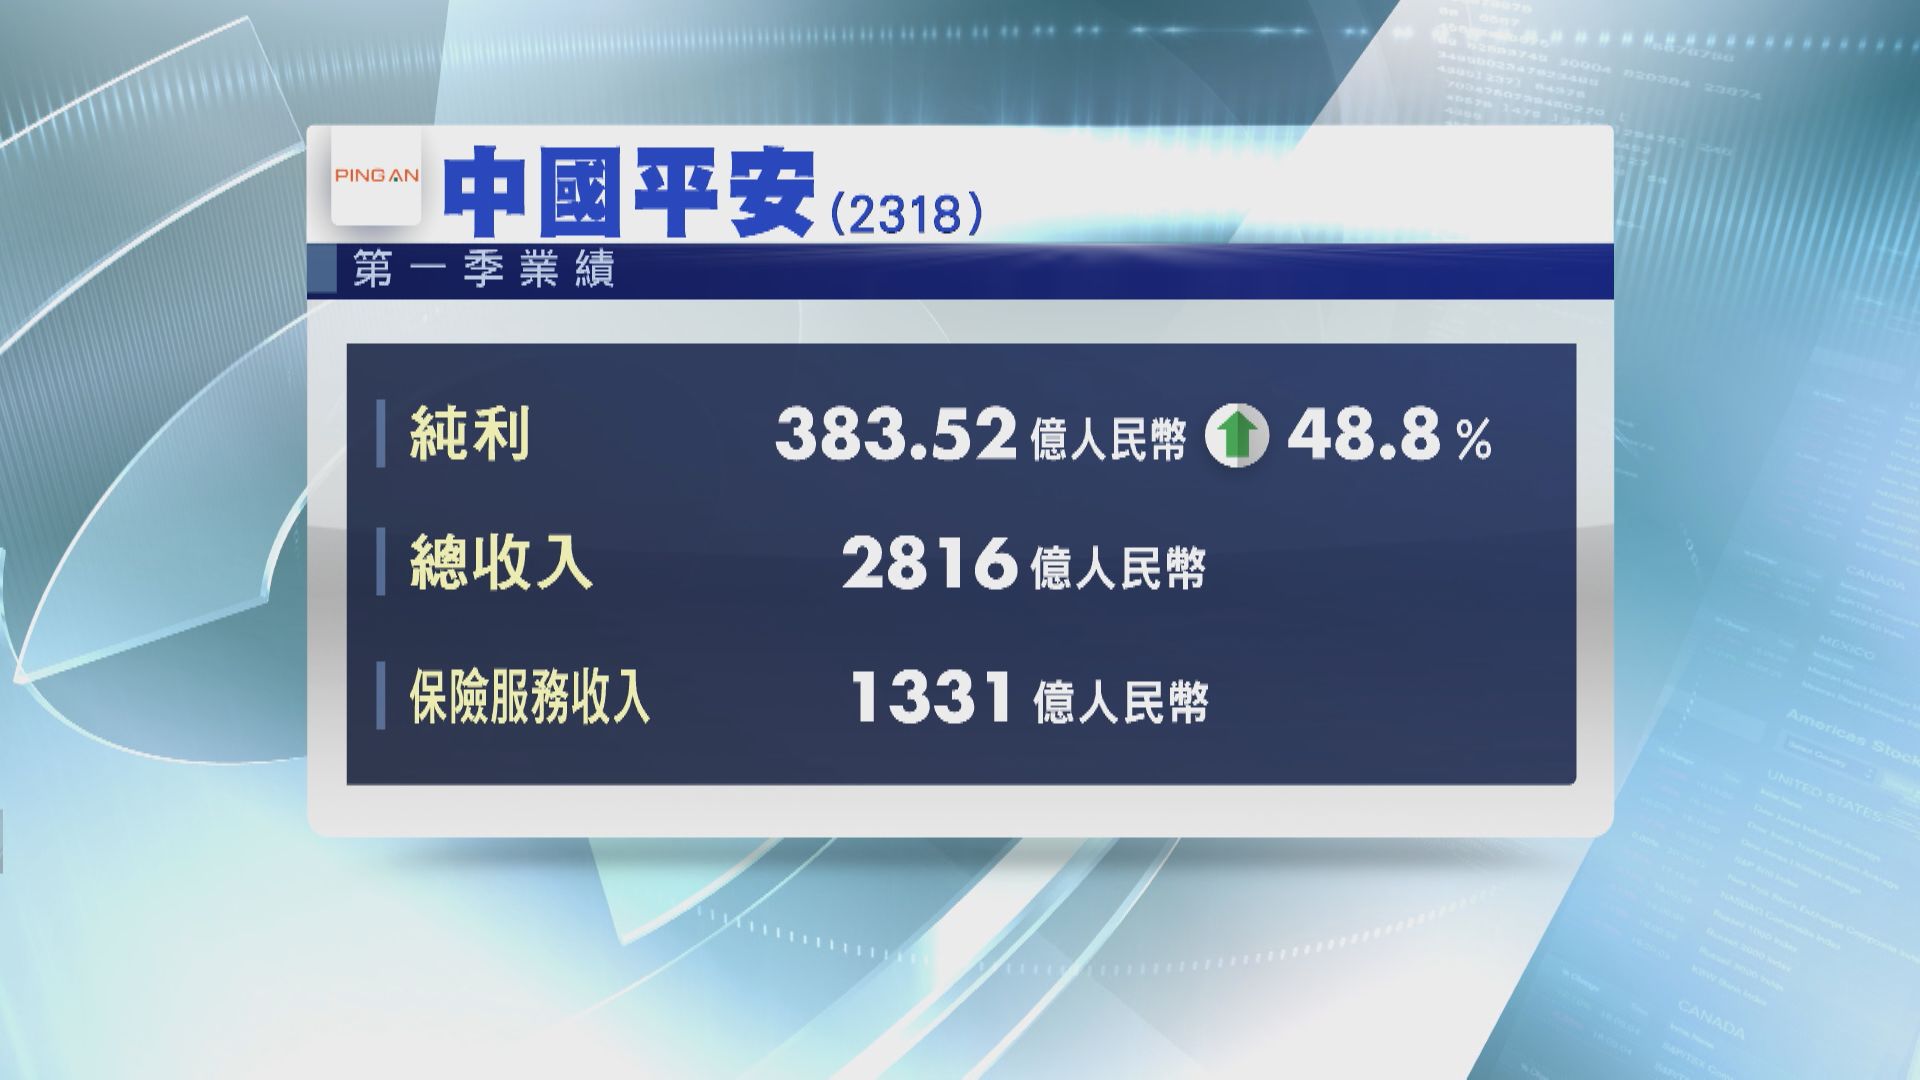 【業績速報】平保首季淨利潤升近49%  招行多賺7.8%